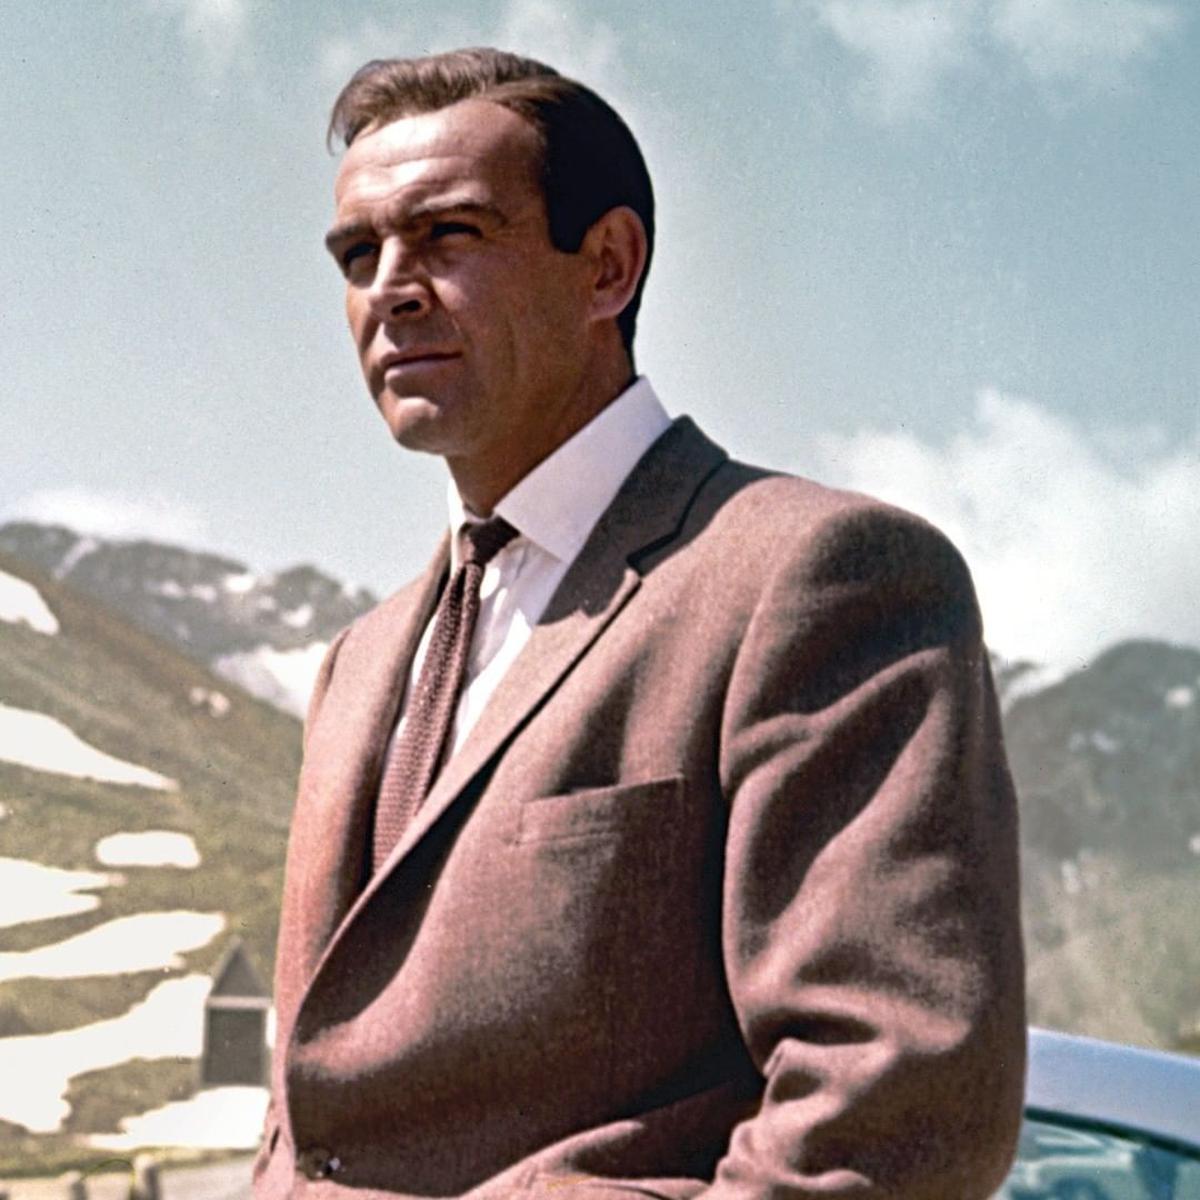 Agente 007 | Sean Connery es considerado el mejor James Bond